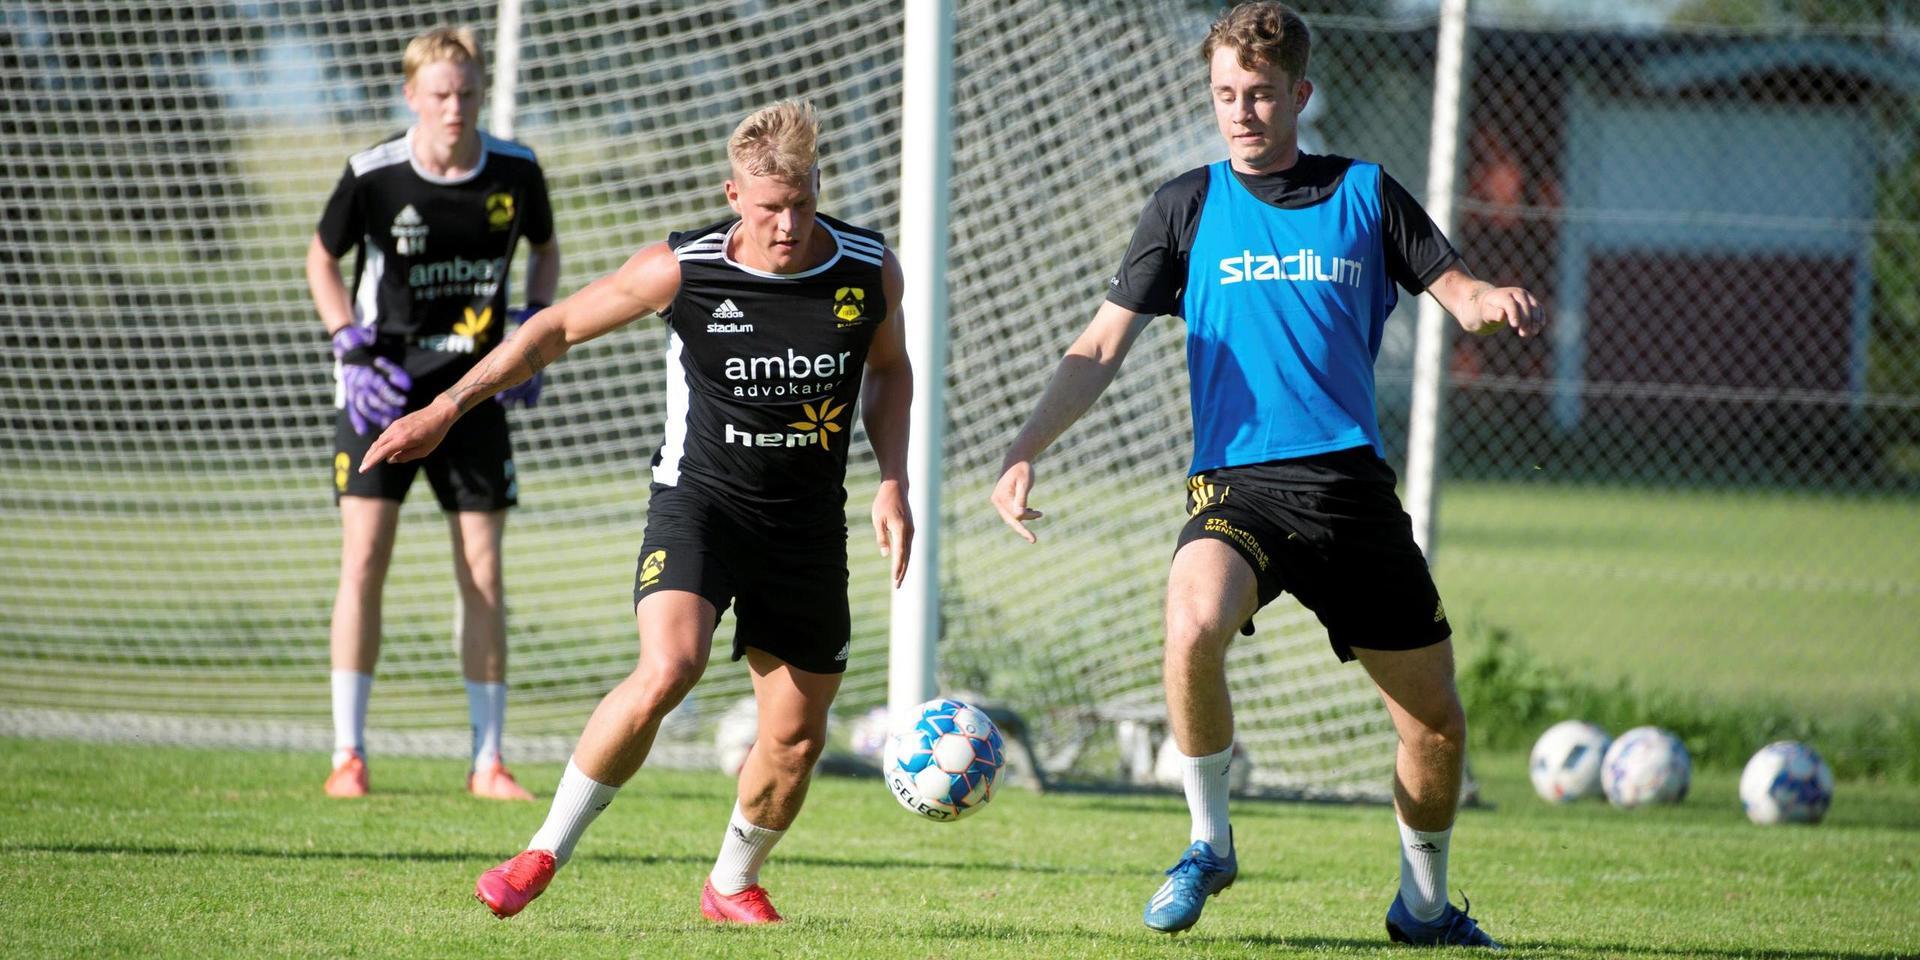 Emil Håkansson hade ett tufft fjolår, men har kommit starkt tillbaka i Astrio som jagar en plats i division 2 nästa år.